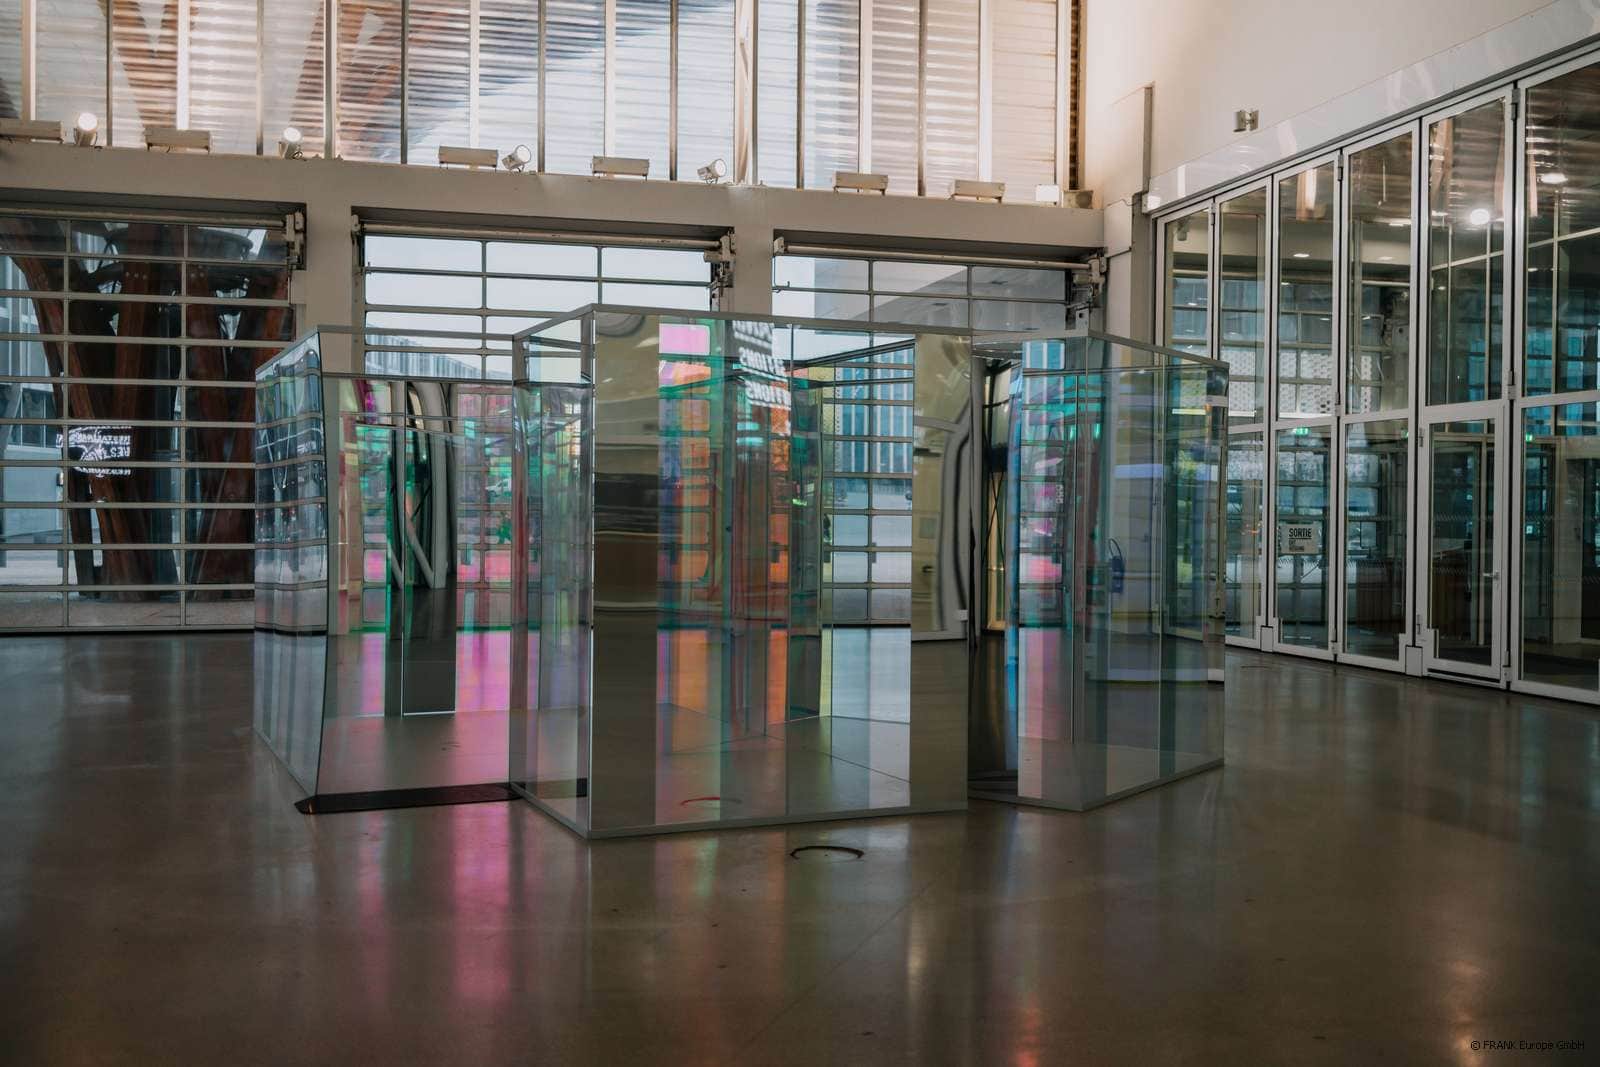 Centre Pompidou Metz display cases